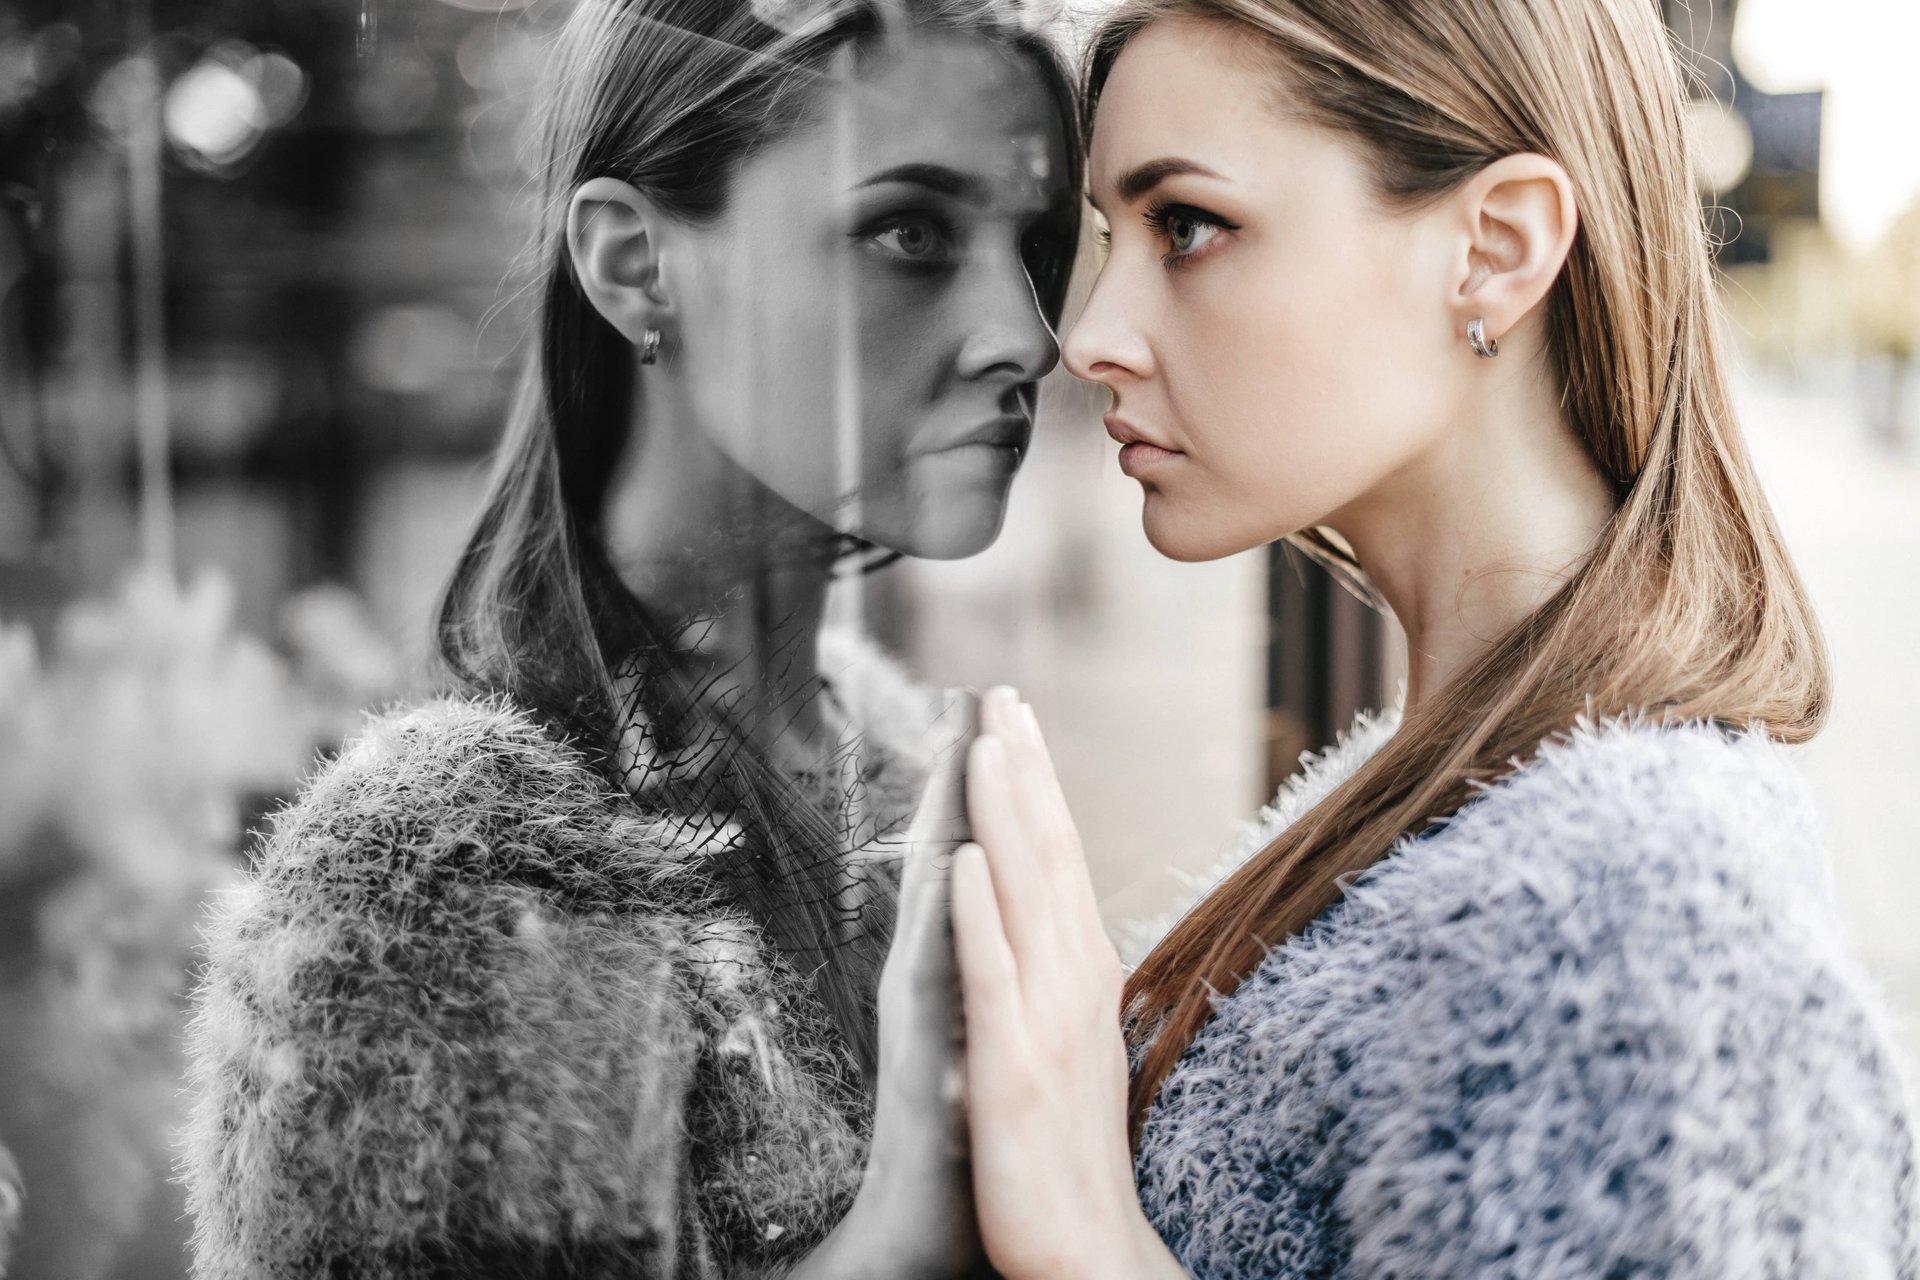 Eine Junge Frau lehnt frontal an einer Scheibe und betrachtet ihr schwarz-weißes Spiegelbild.